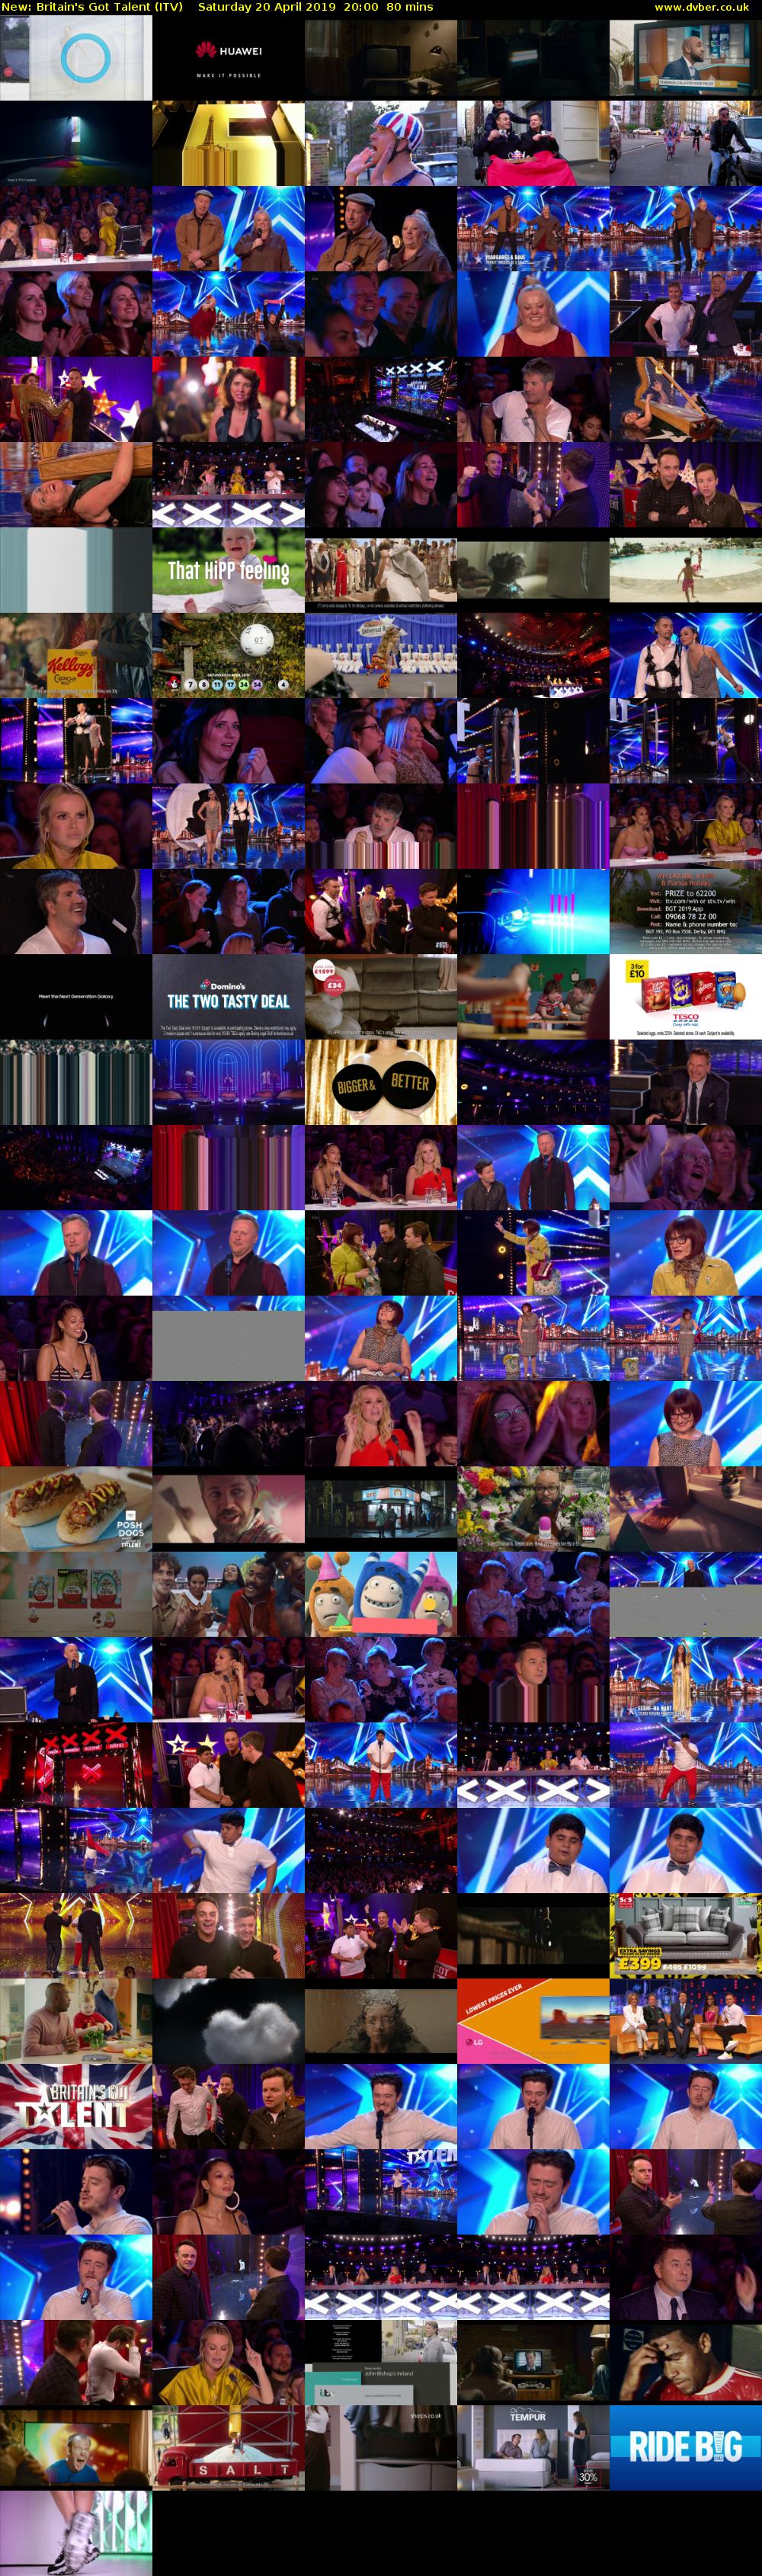 Britain's Got Talent (ITV) Saturday 20 April 2019 20:00 - 21:20